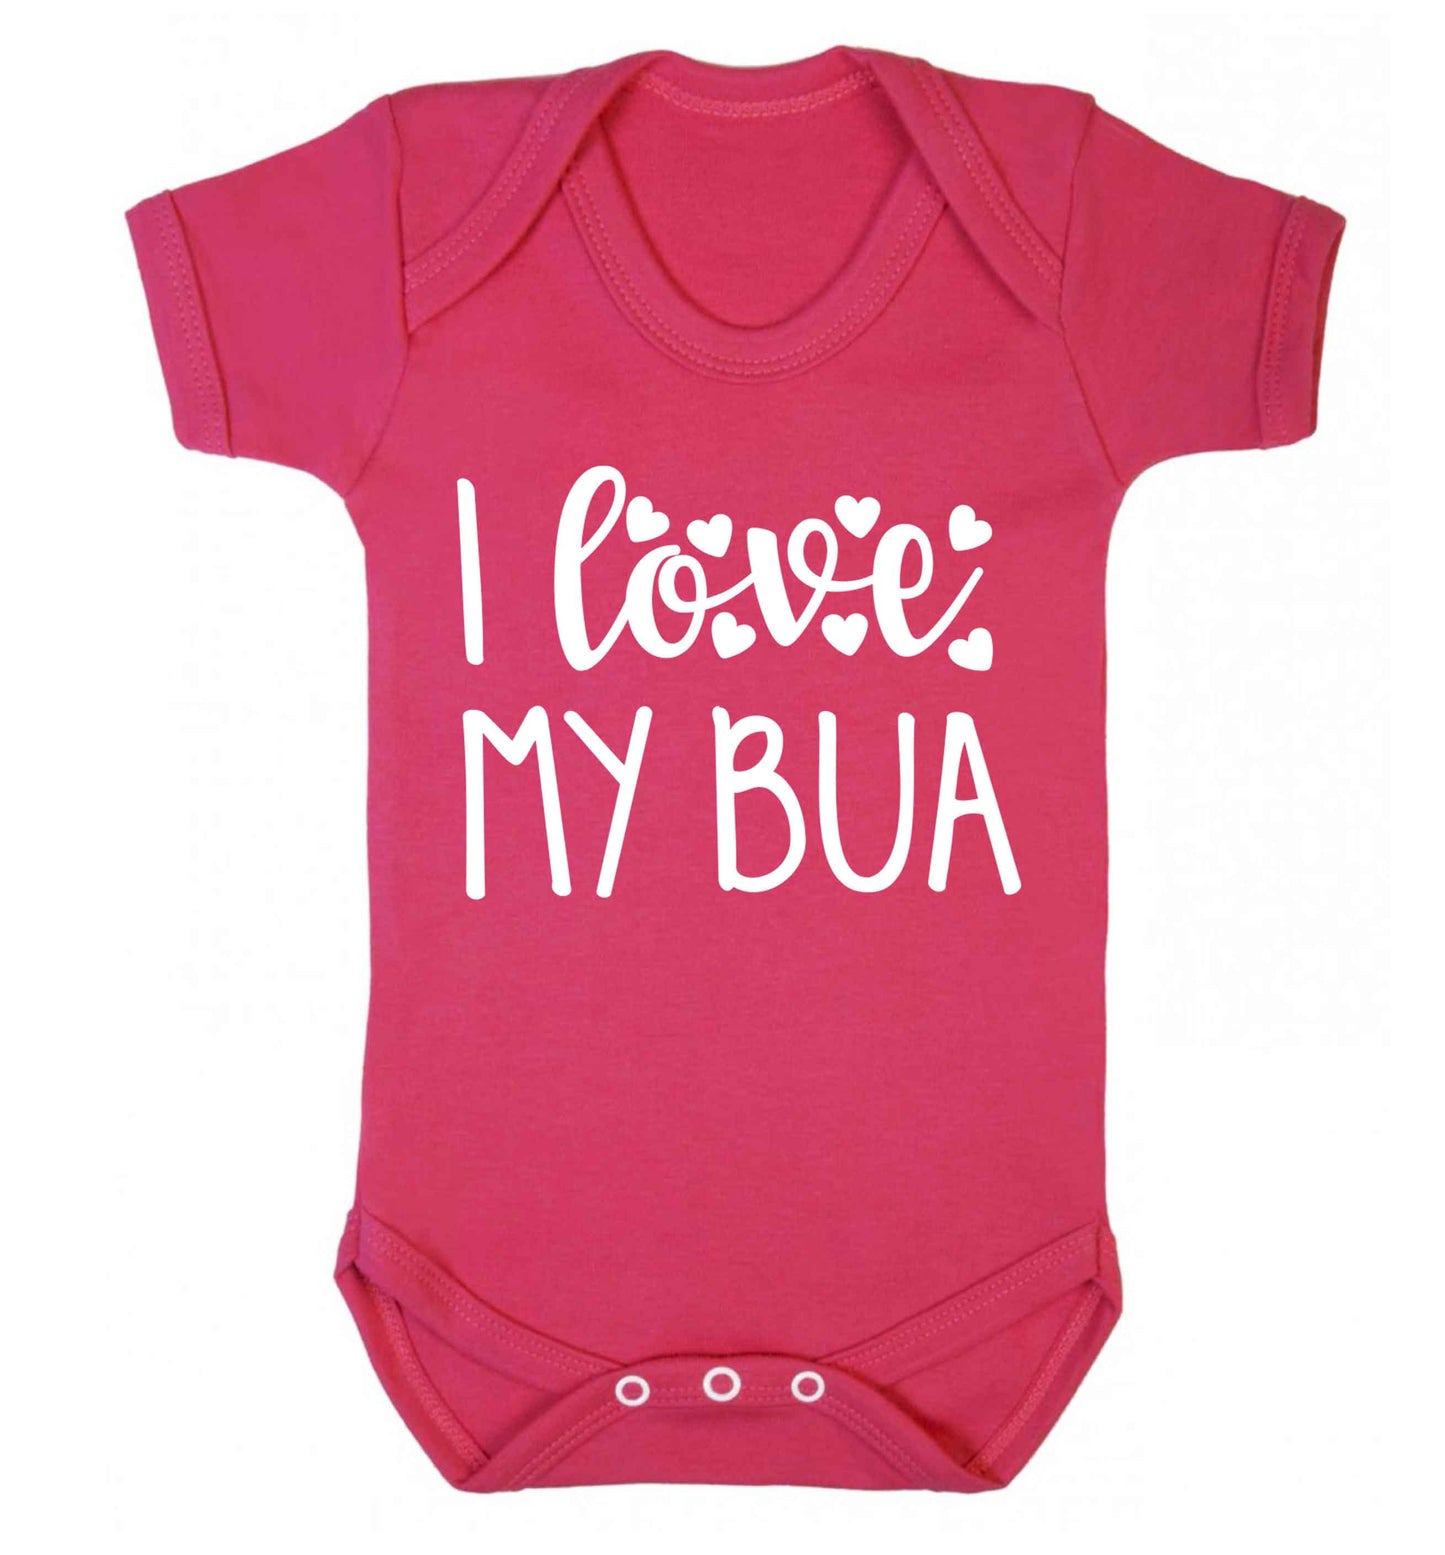 I love my bua Baby Vest dark pink 18-24 months